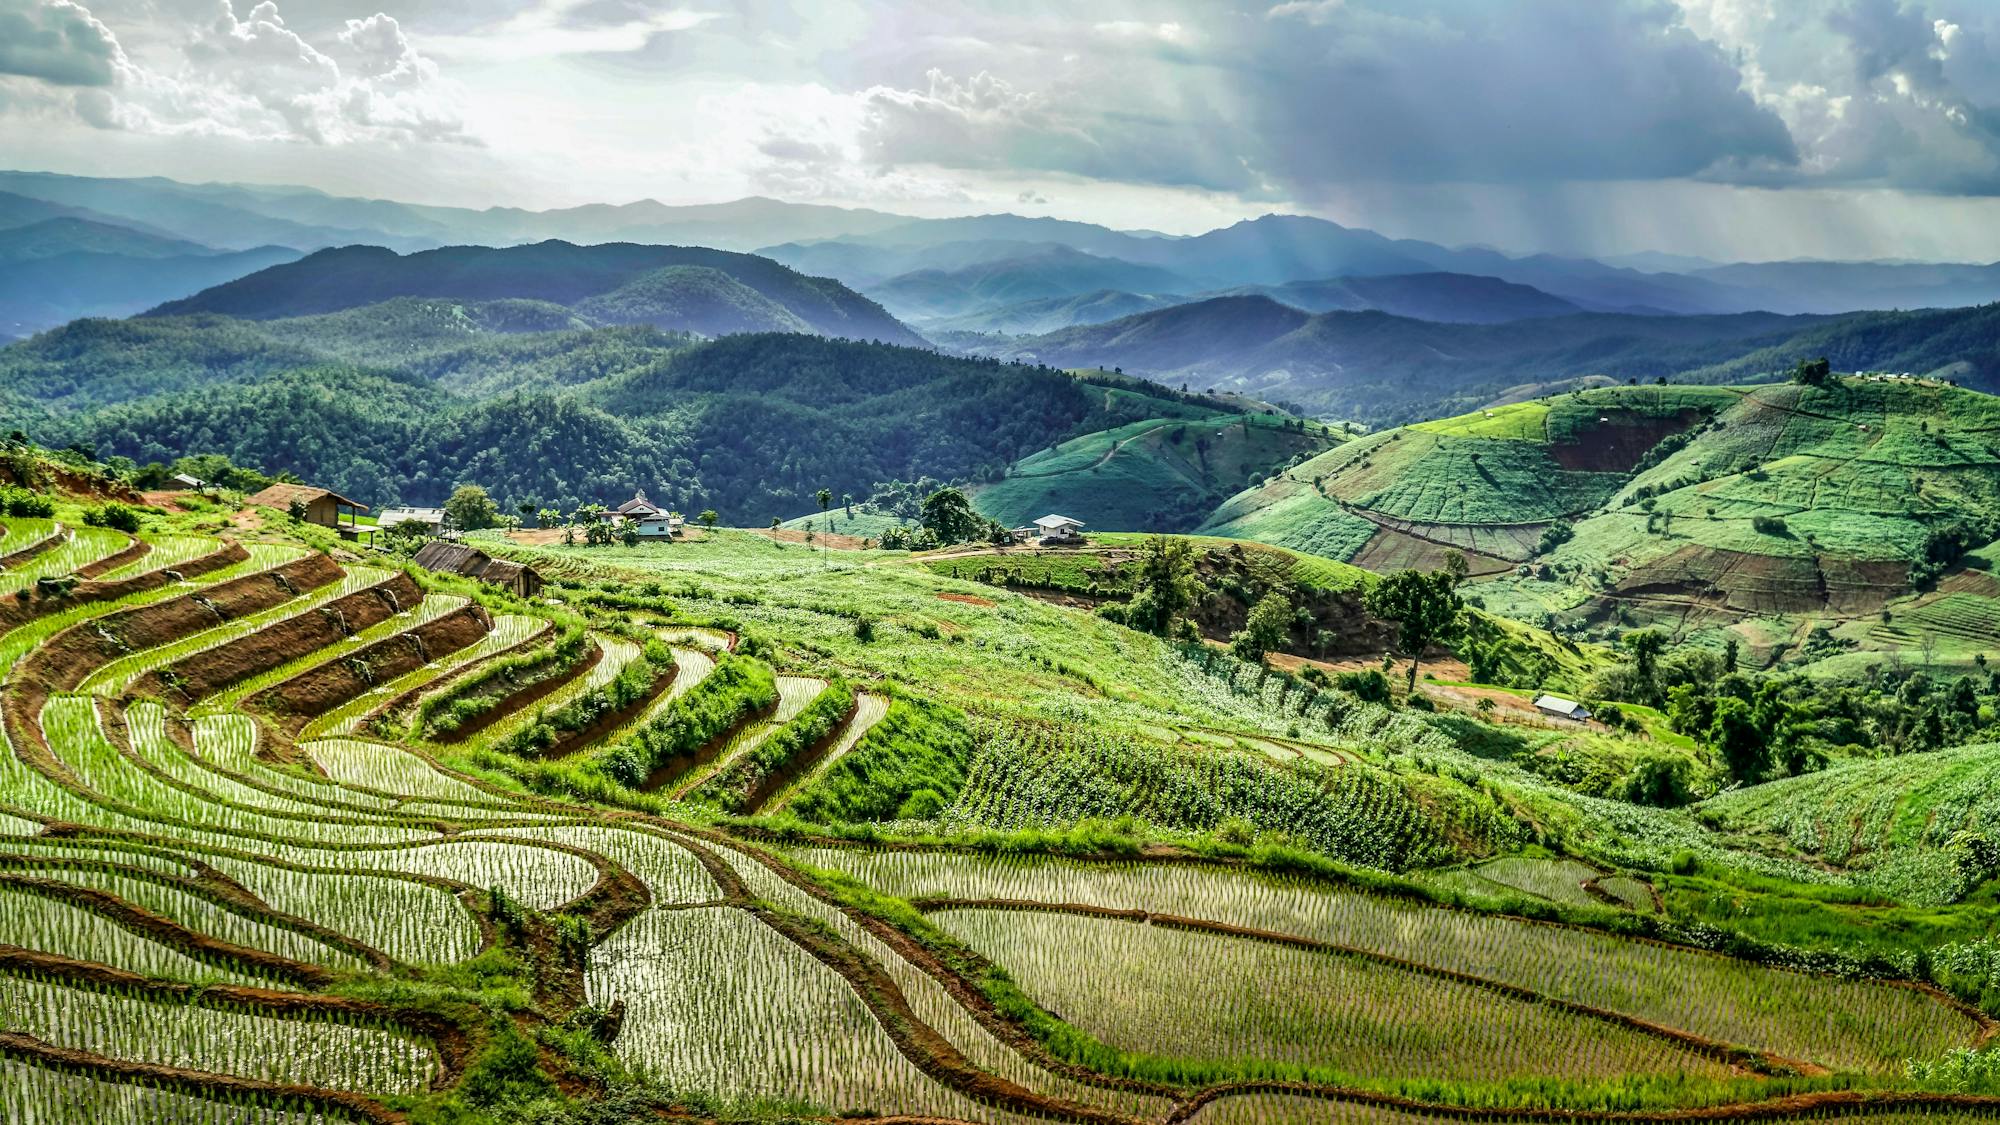 Zahlreiche Reisfelder, weiter Blick auf die grüne Landschaft Thailands.